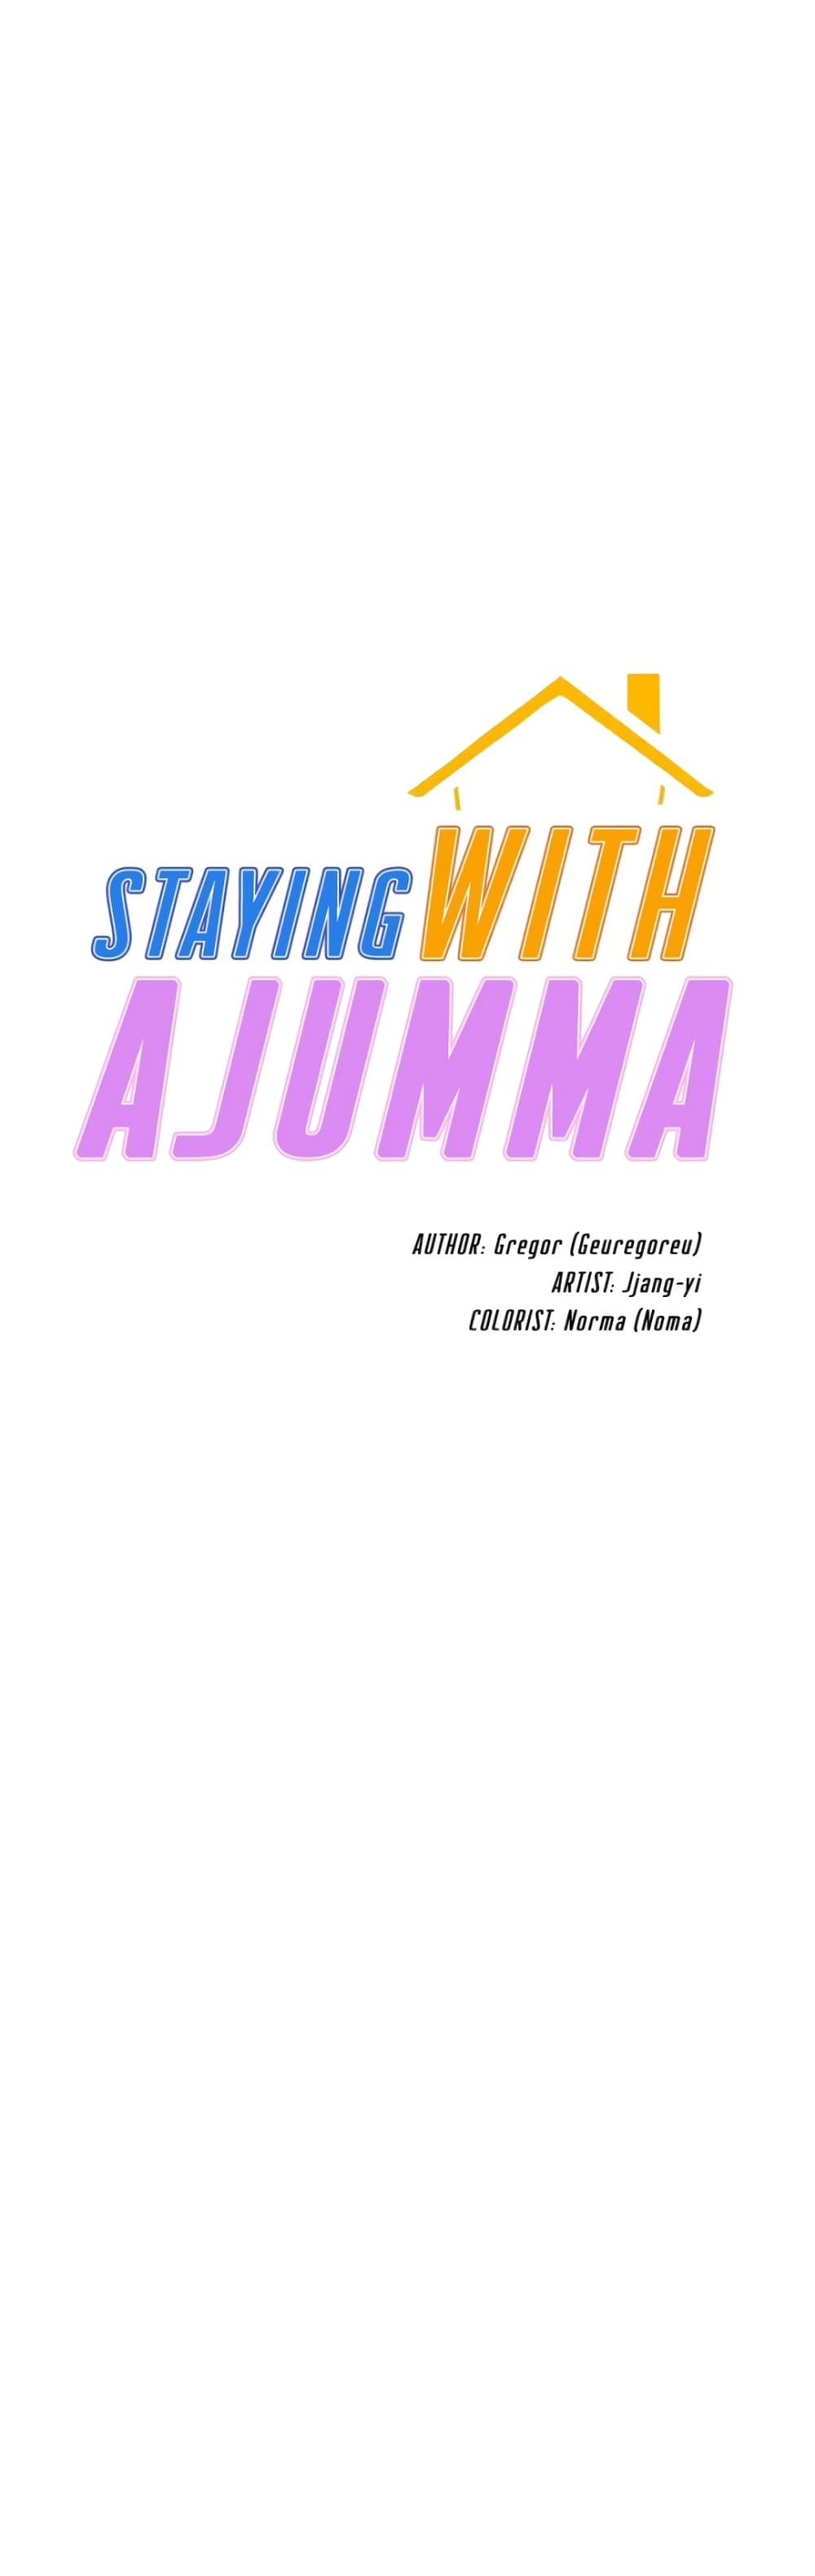 Staying with Ajumma 48-48